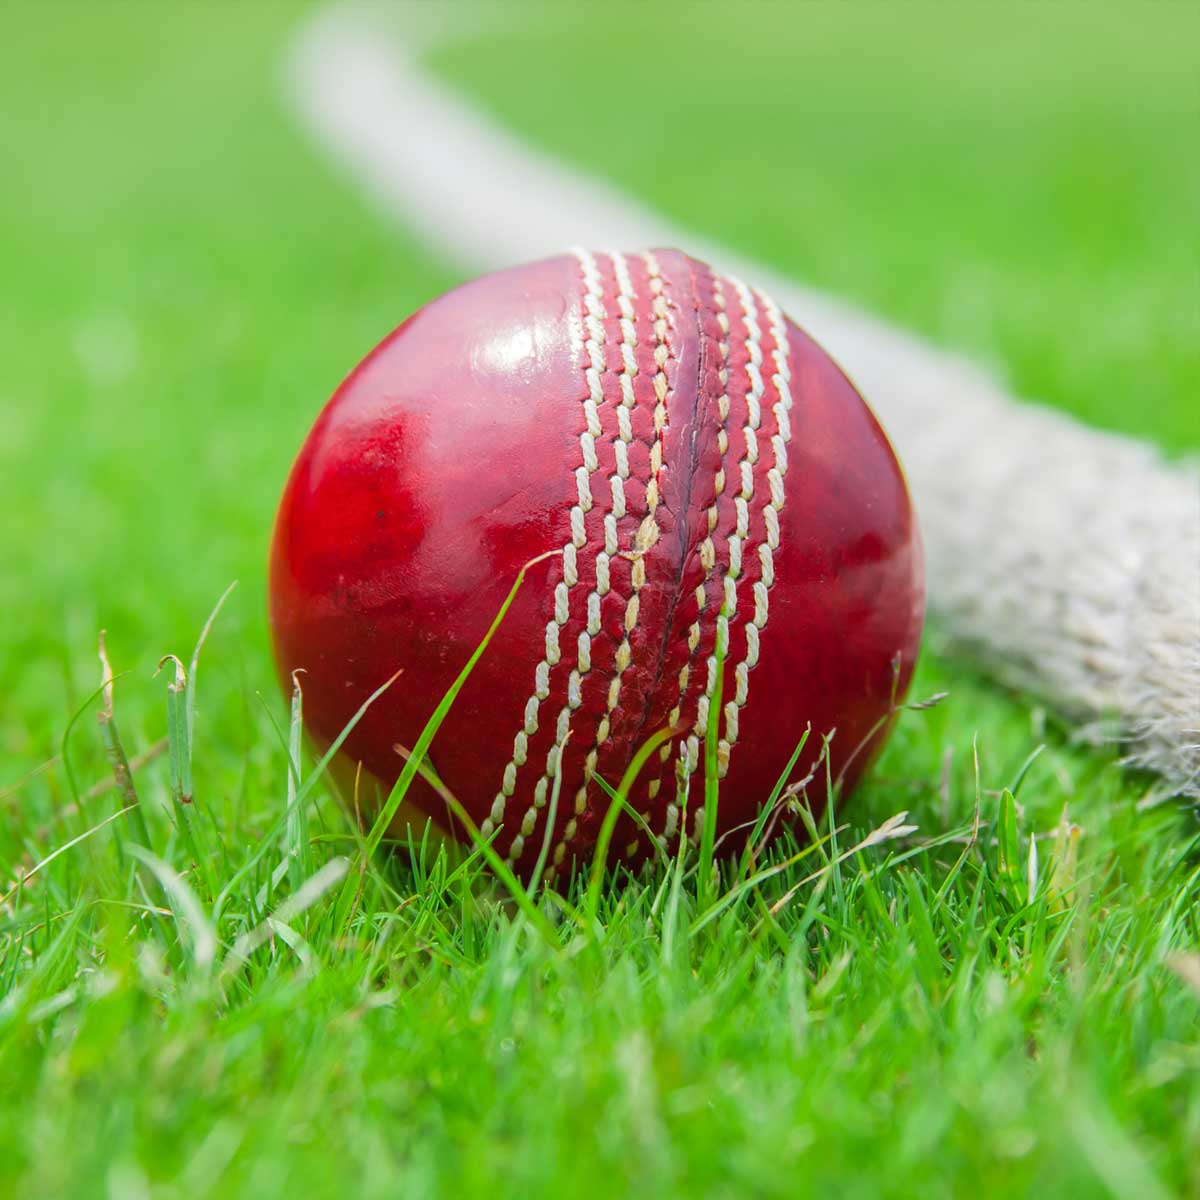 Cricket Balls Manufacturers in Nalchik